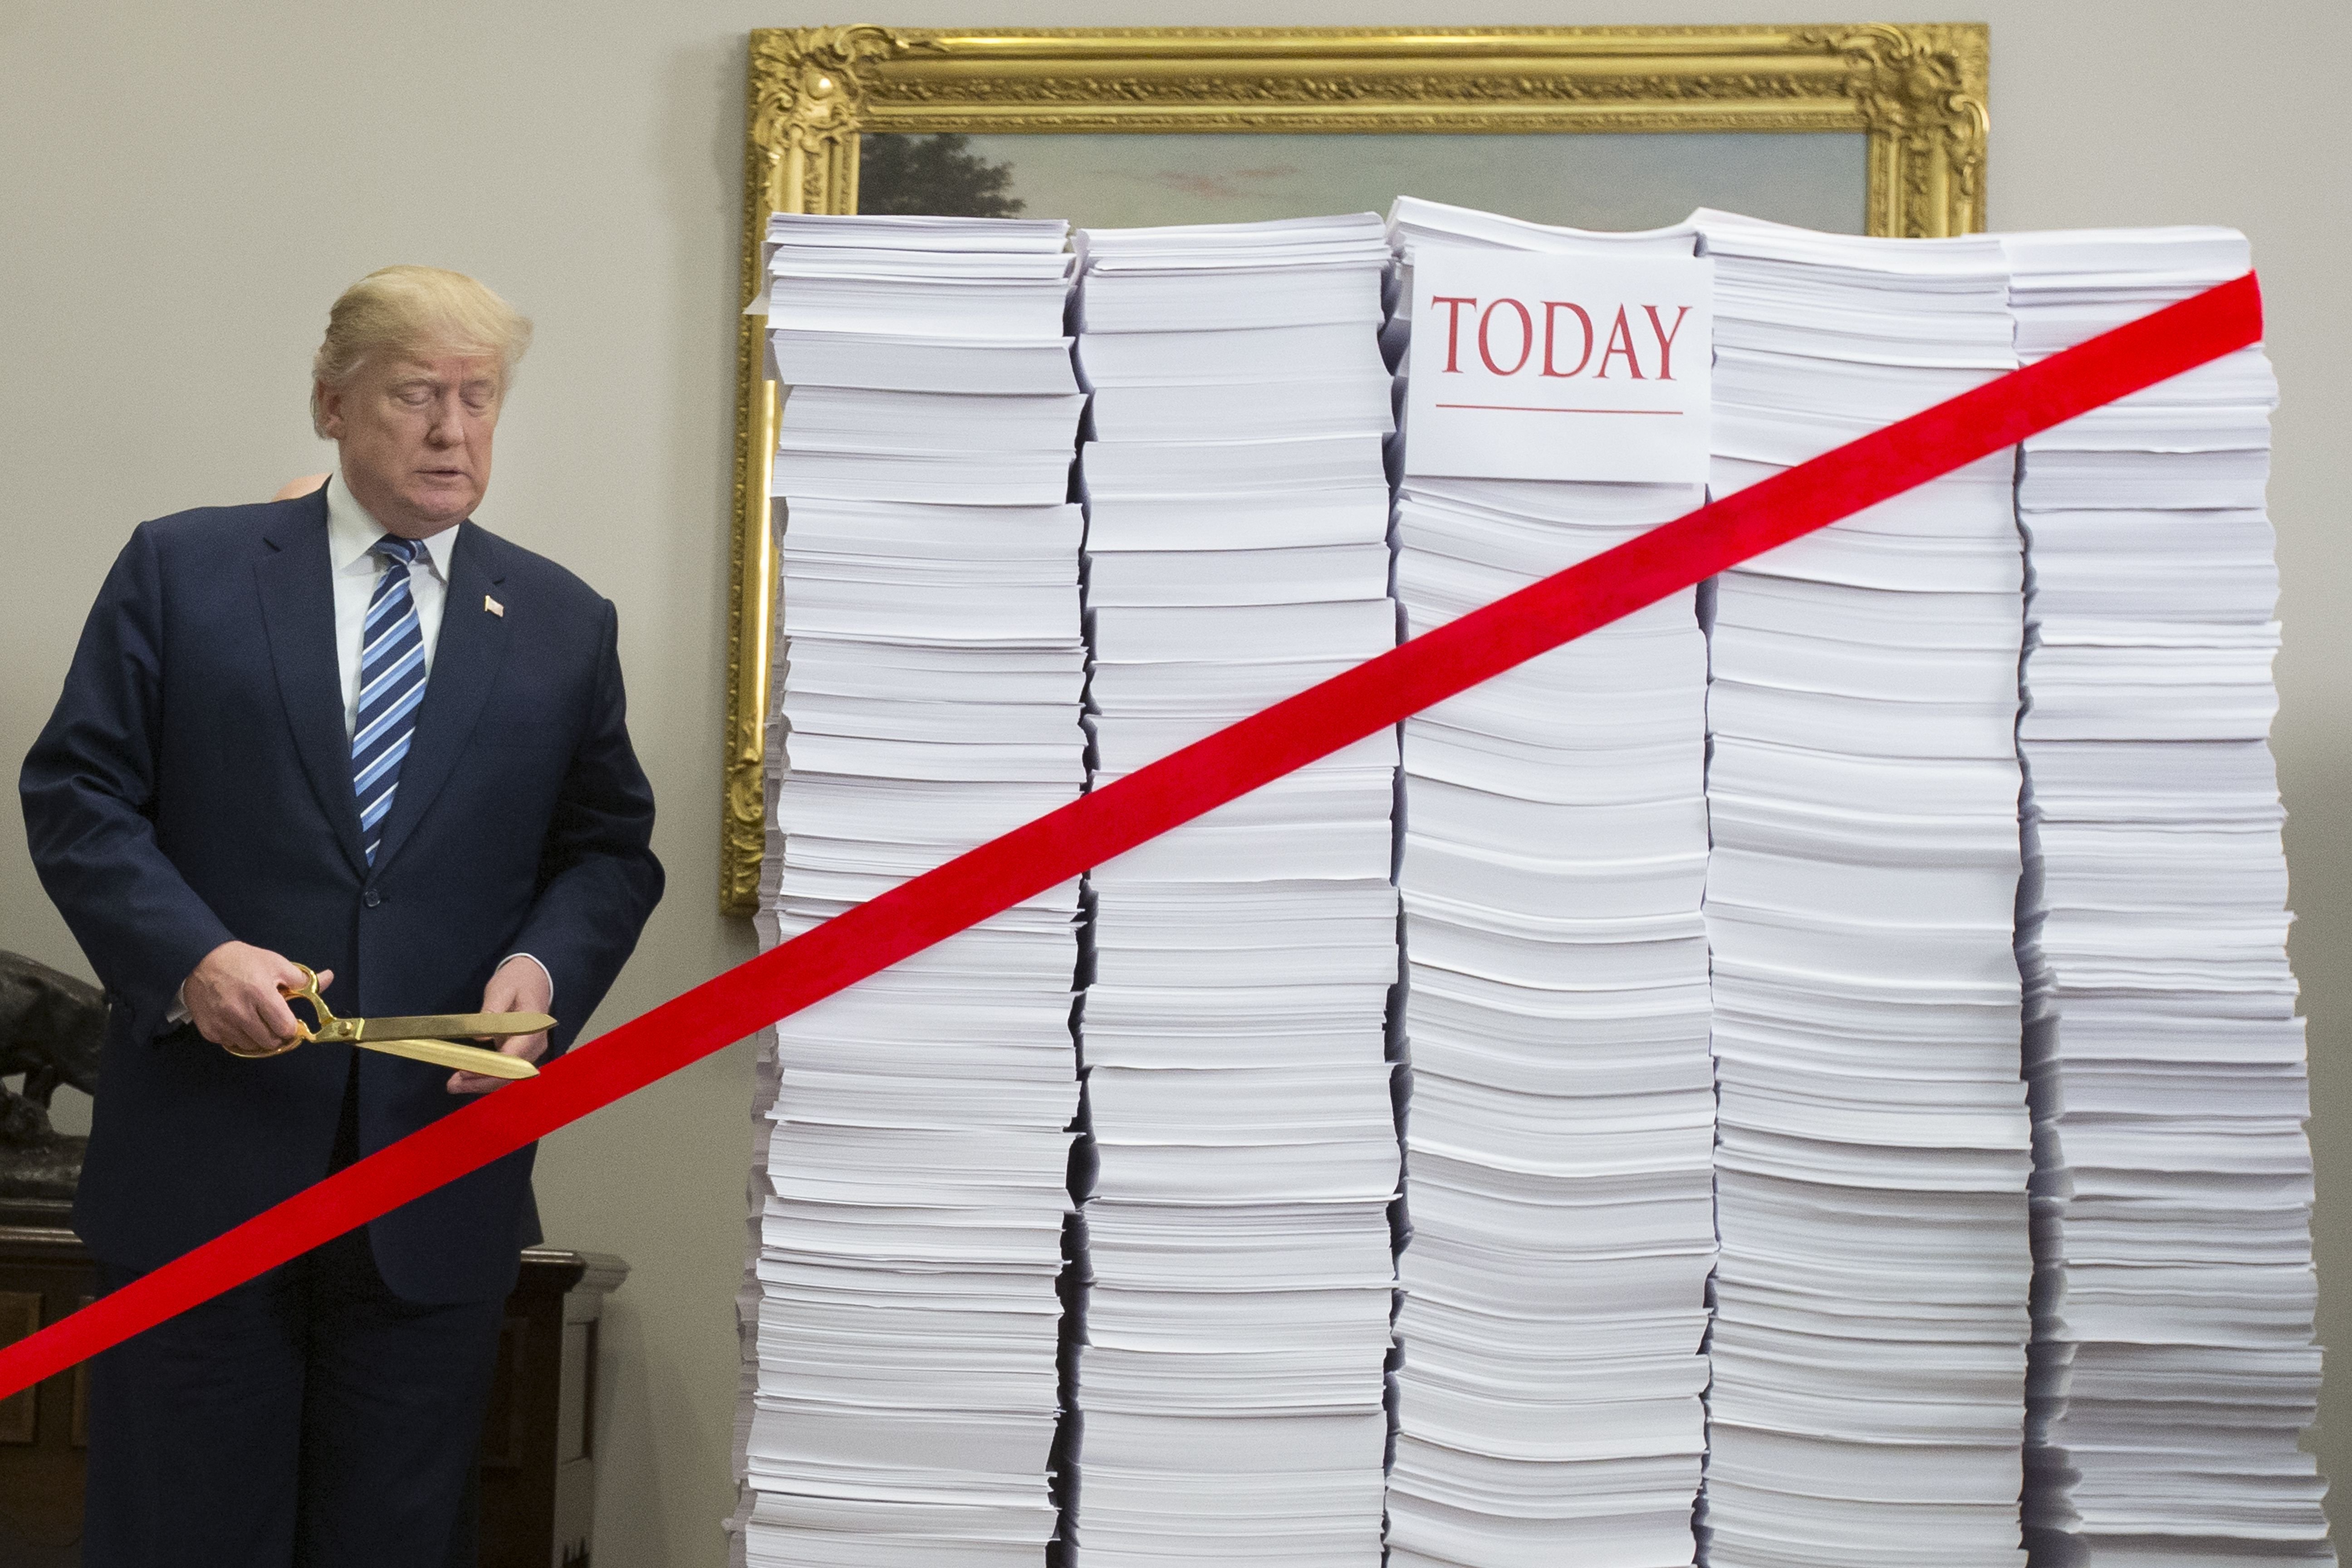 Trump cuts regulations